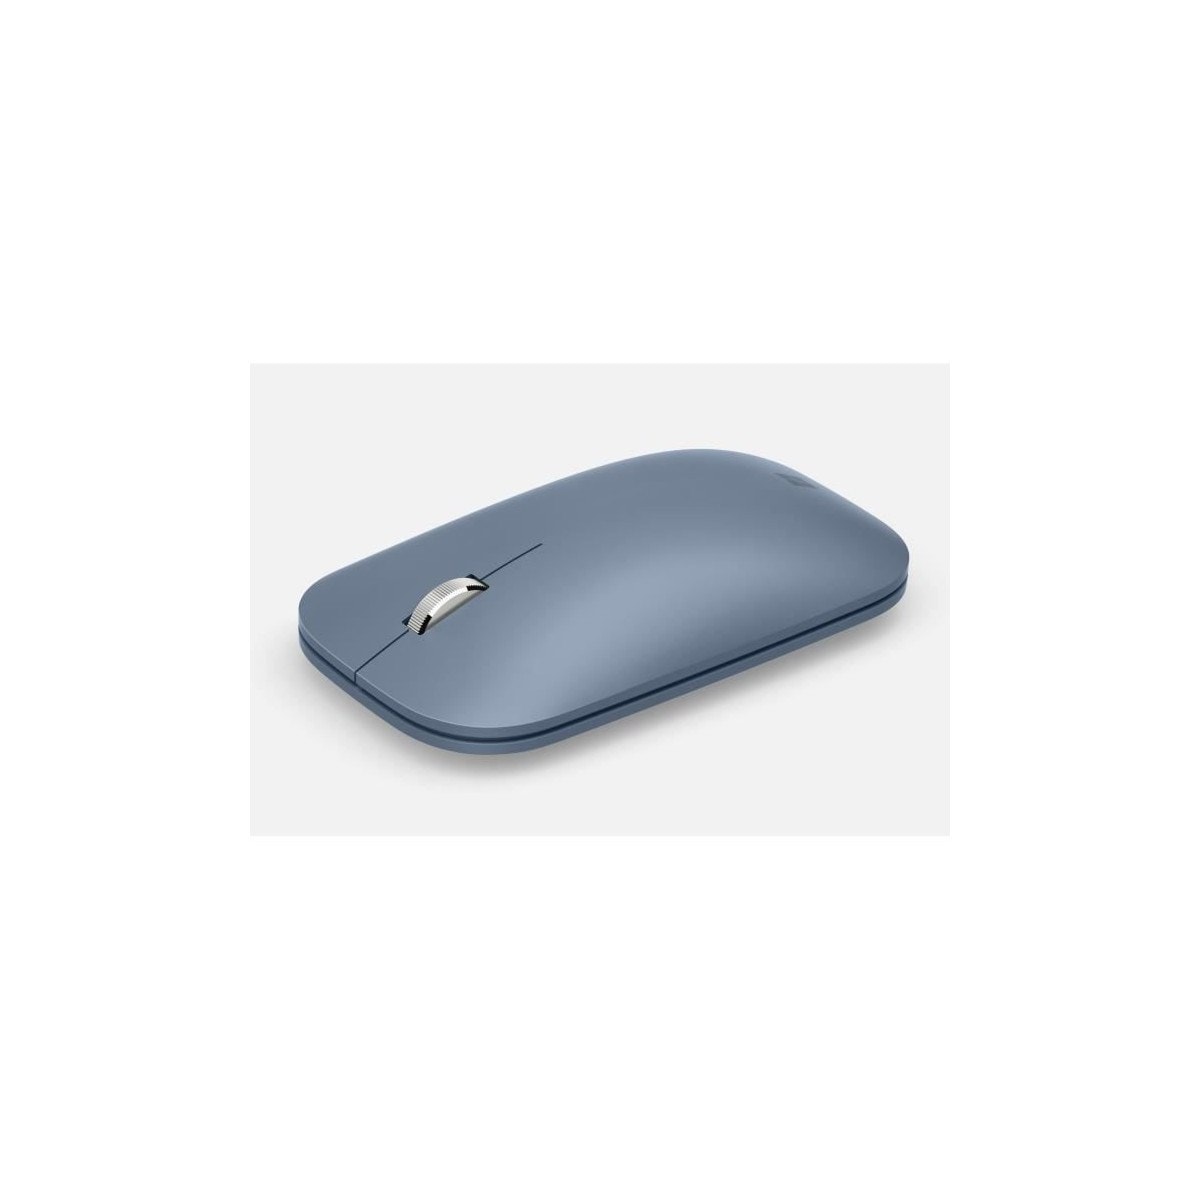 Surface mobile mouse - souris bluetooth - bleu glacier MICROSOFT Pas Cher 